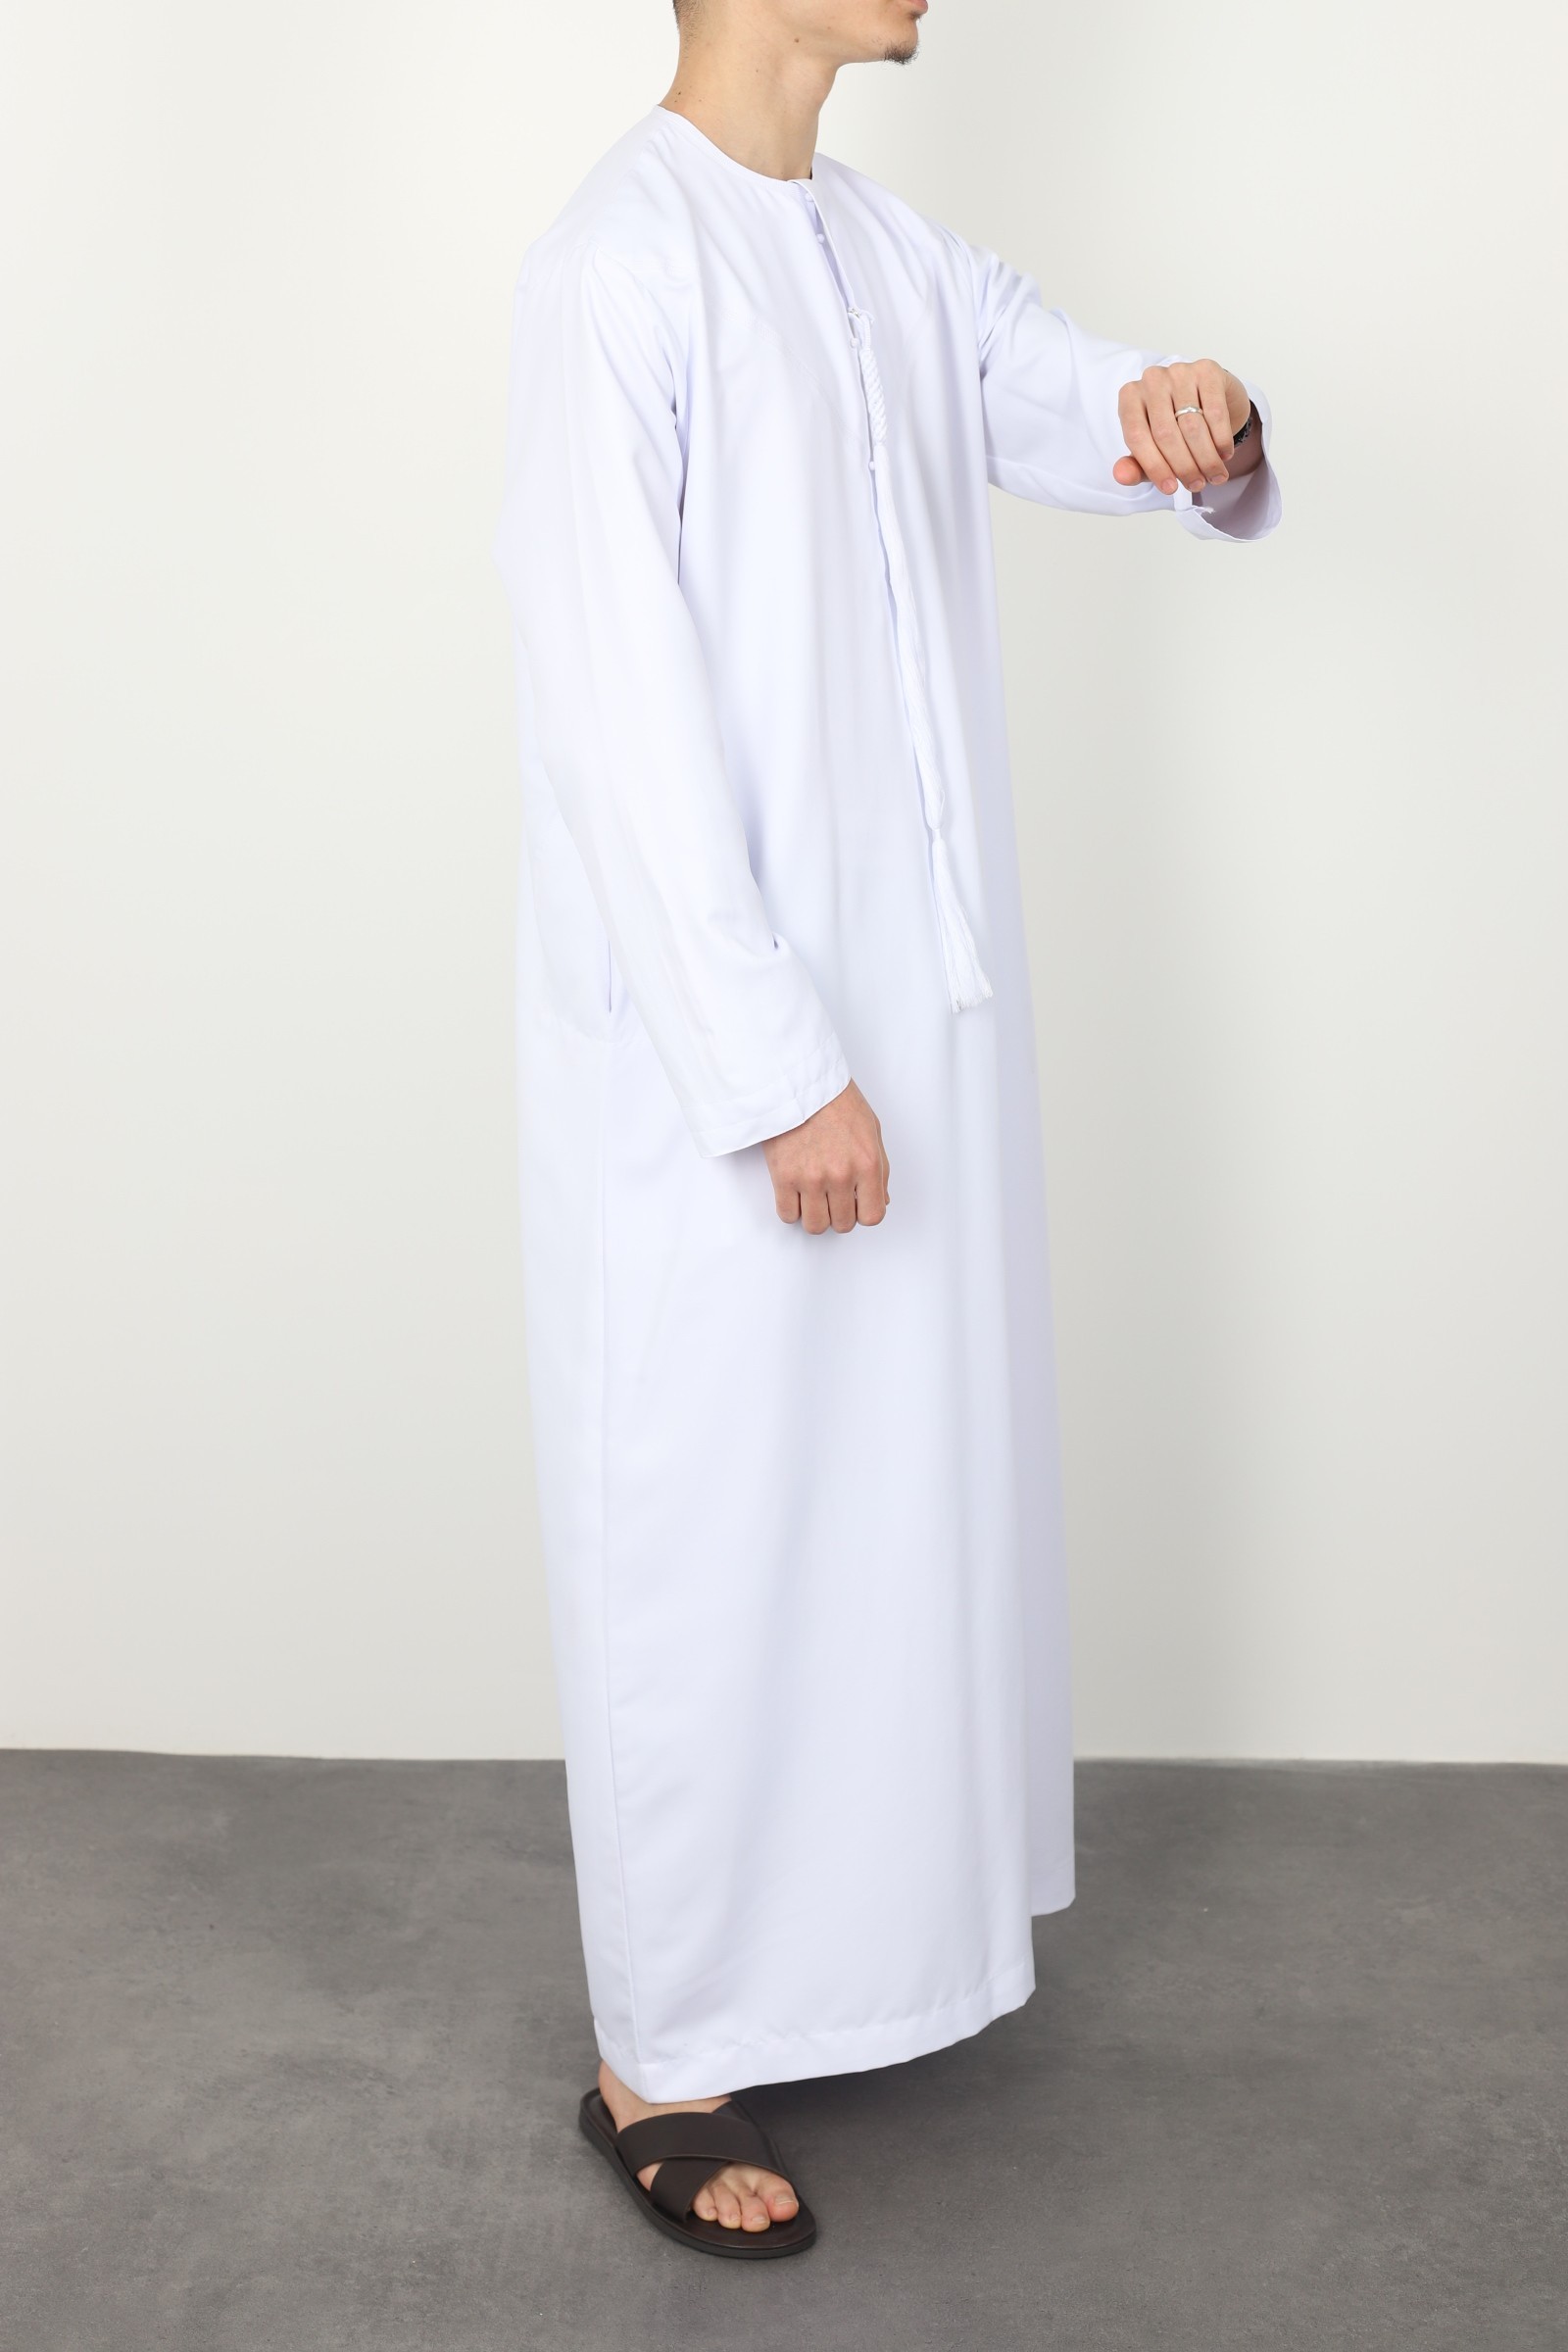 Qamis emirati blanc luxe qualité supérieur pas chère jennah boutique